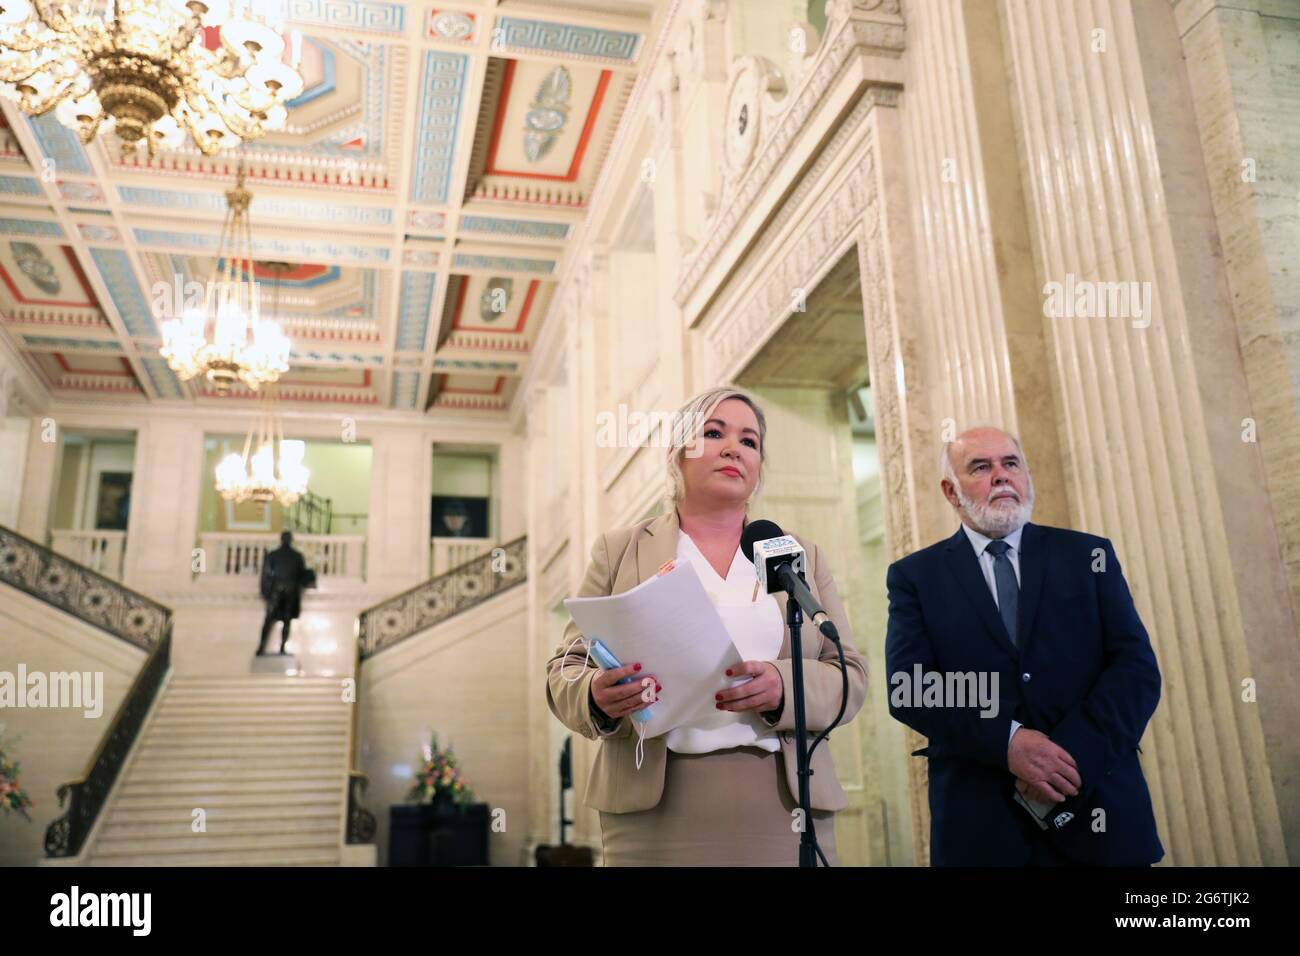 La première ministre adjointe Michelle O'Neill et la députée de Sinn Fein, Francie Molloy, parlent aux médias lors d'une conférence de presse aux édifices du Parlement, à Stormont. Date de la photo: Jeudi 8 juillet 2021. Banque D'Images